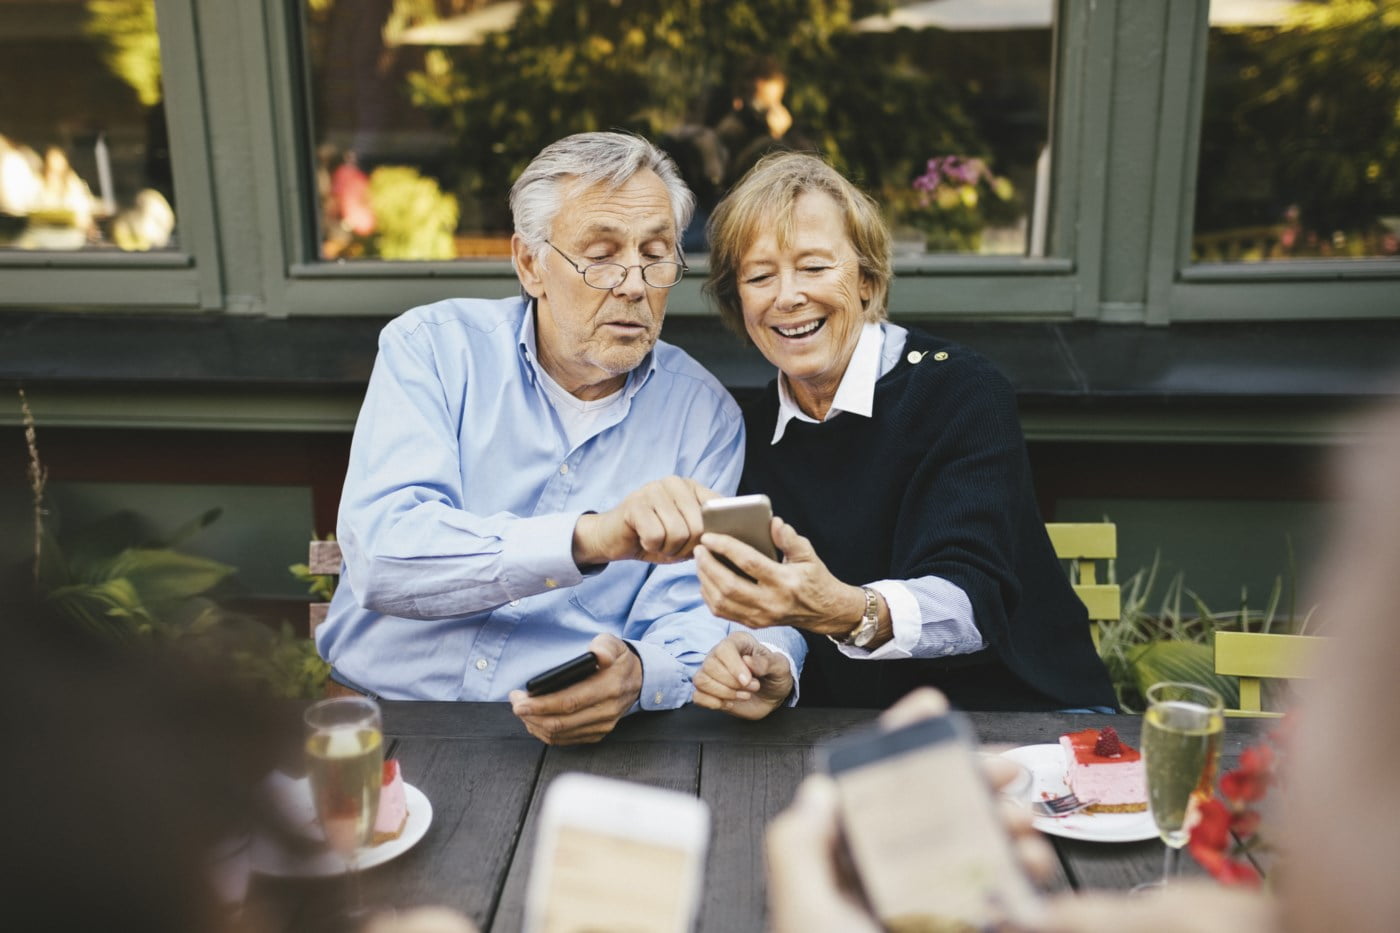 Et eldre par sitter ved et bord utendørs og ser på en smarttelefon sammen, begge smiler og nyter øyeblikket.